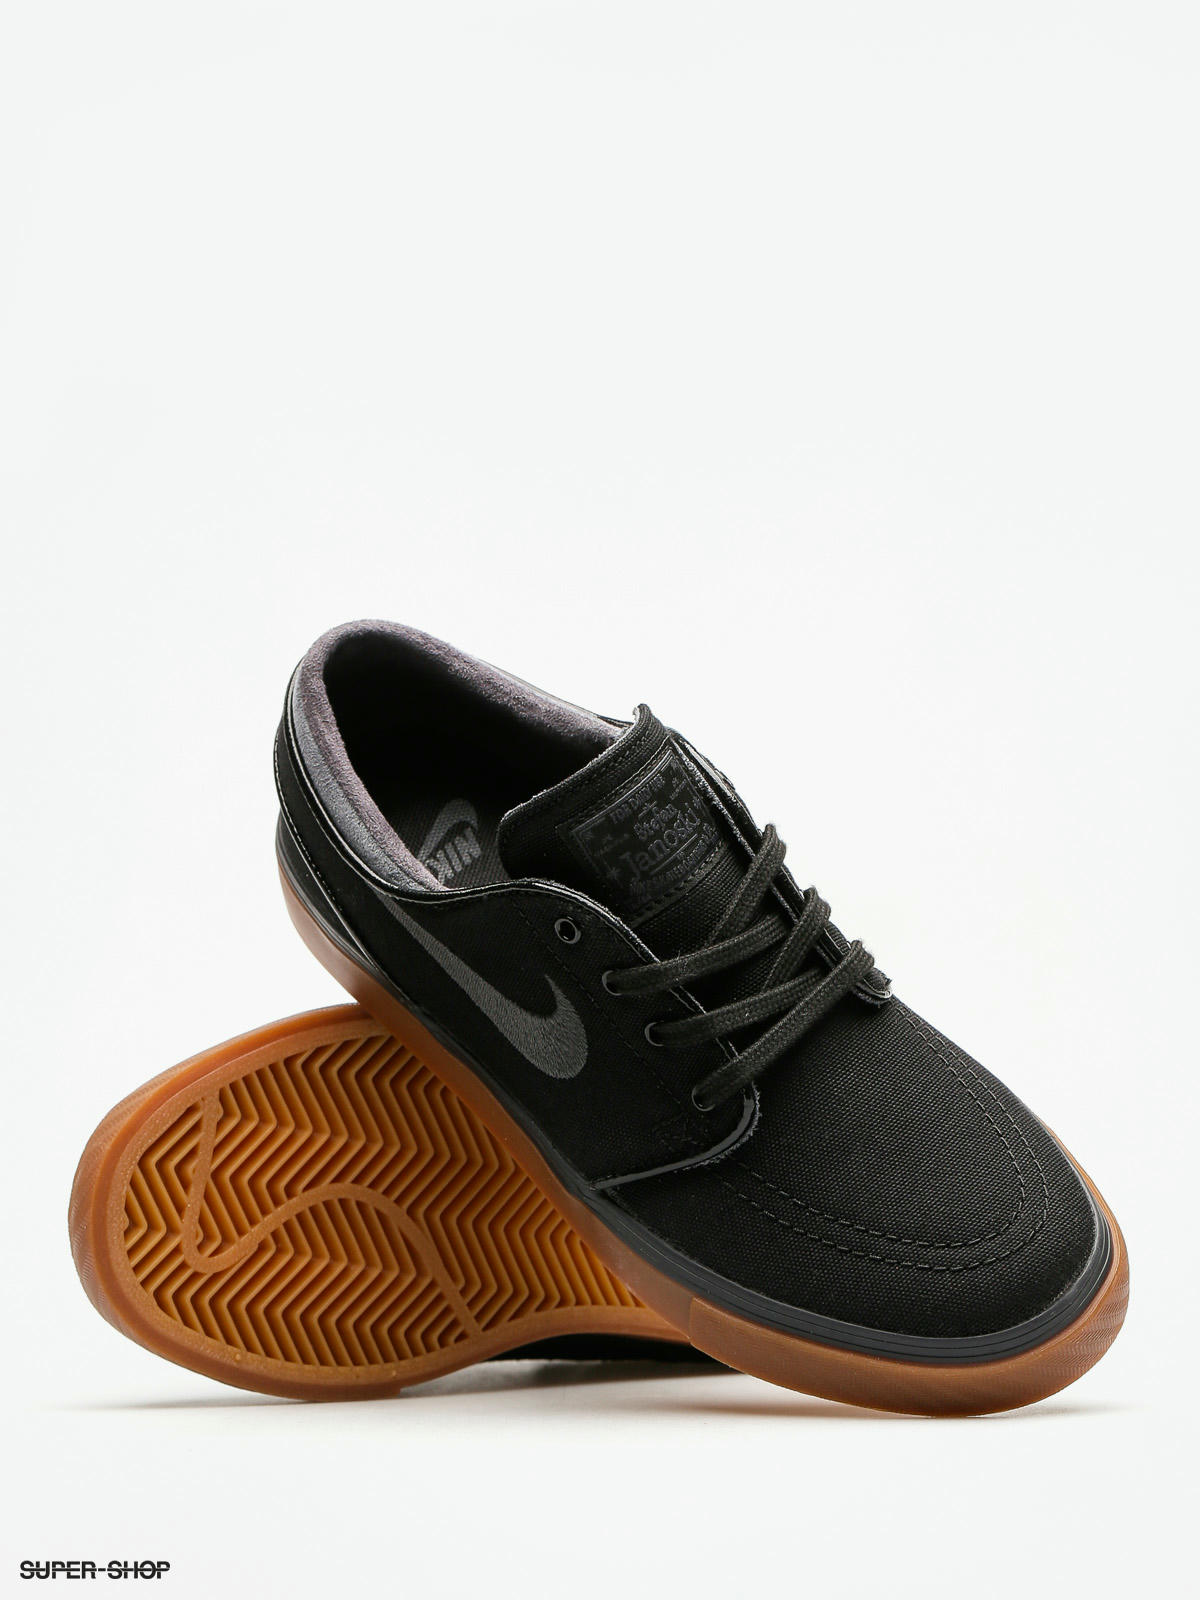 Nike Shoes Zoom Stefan Janoski Cnvs (black/anthracite gum med brown)